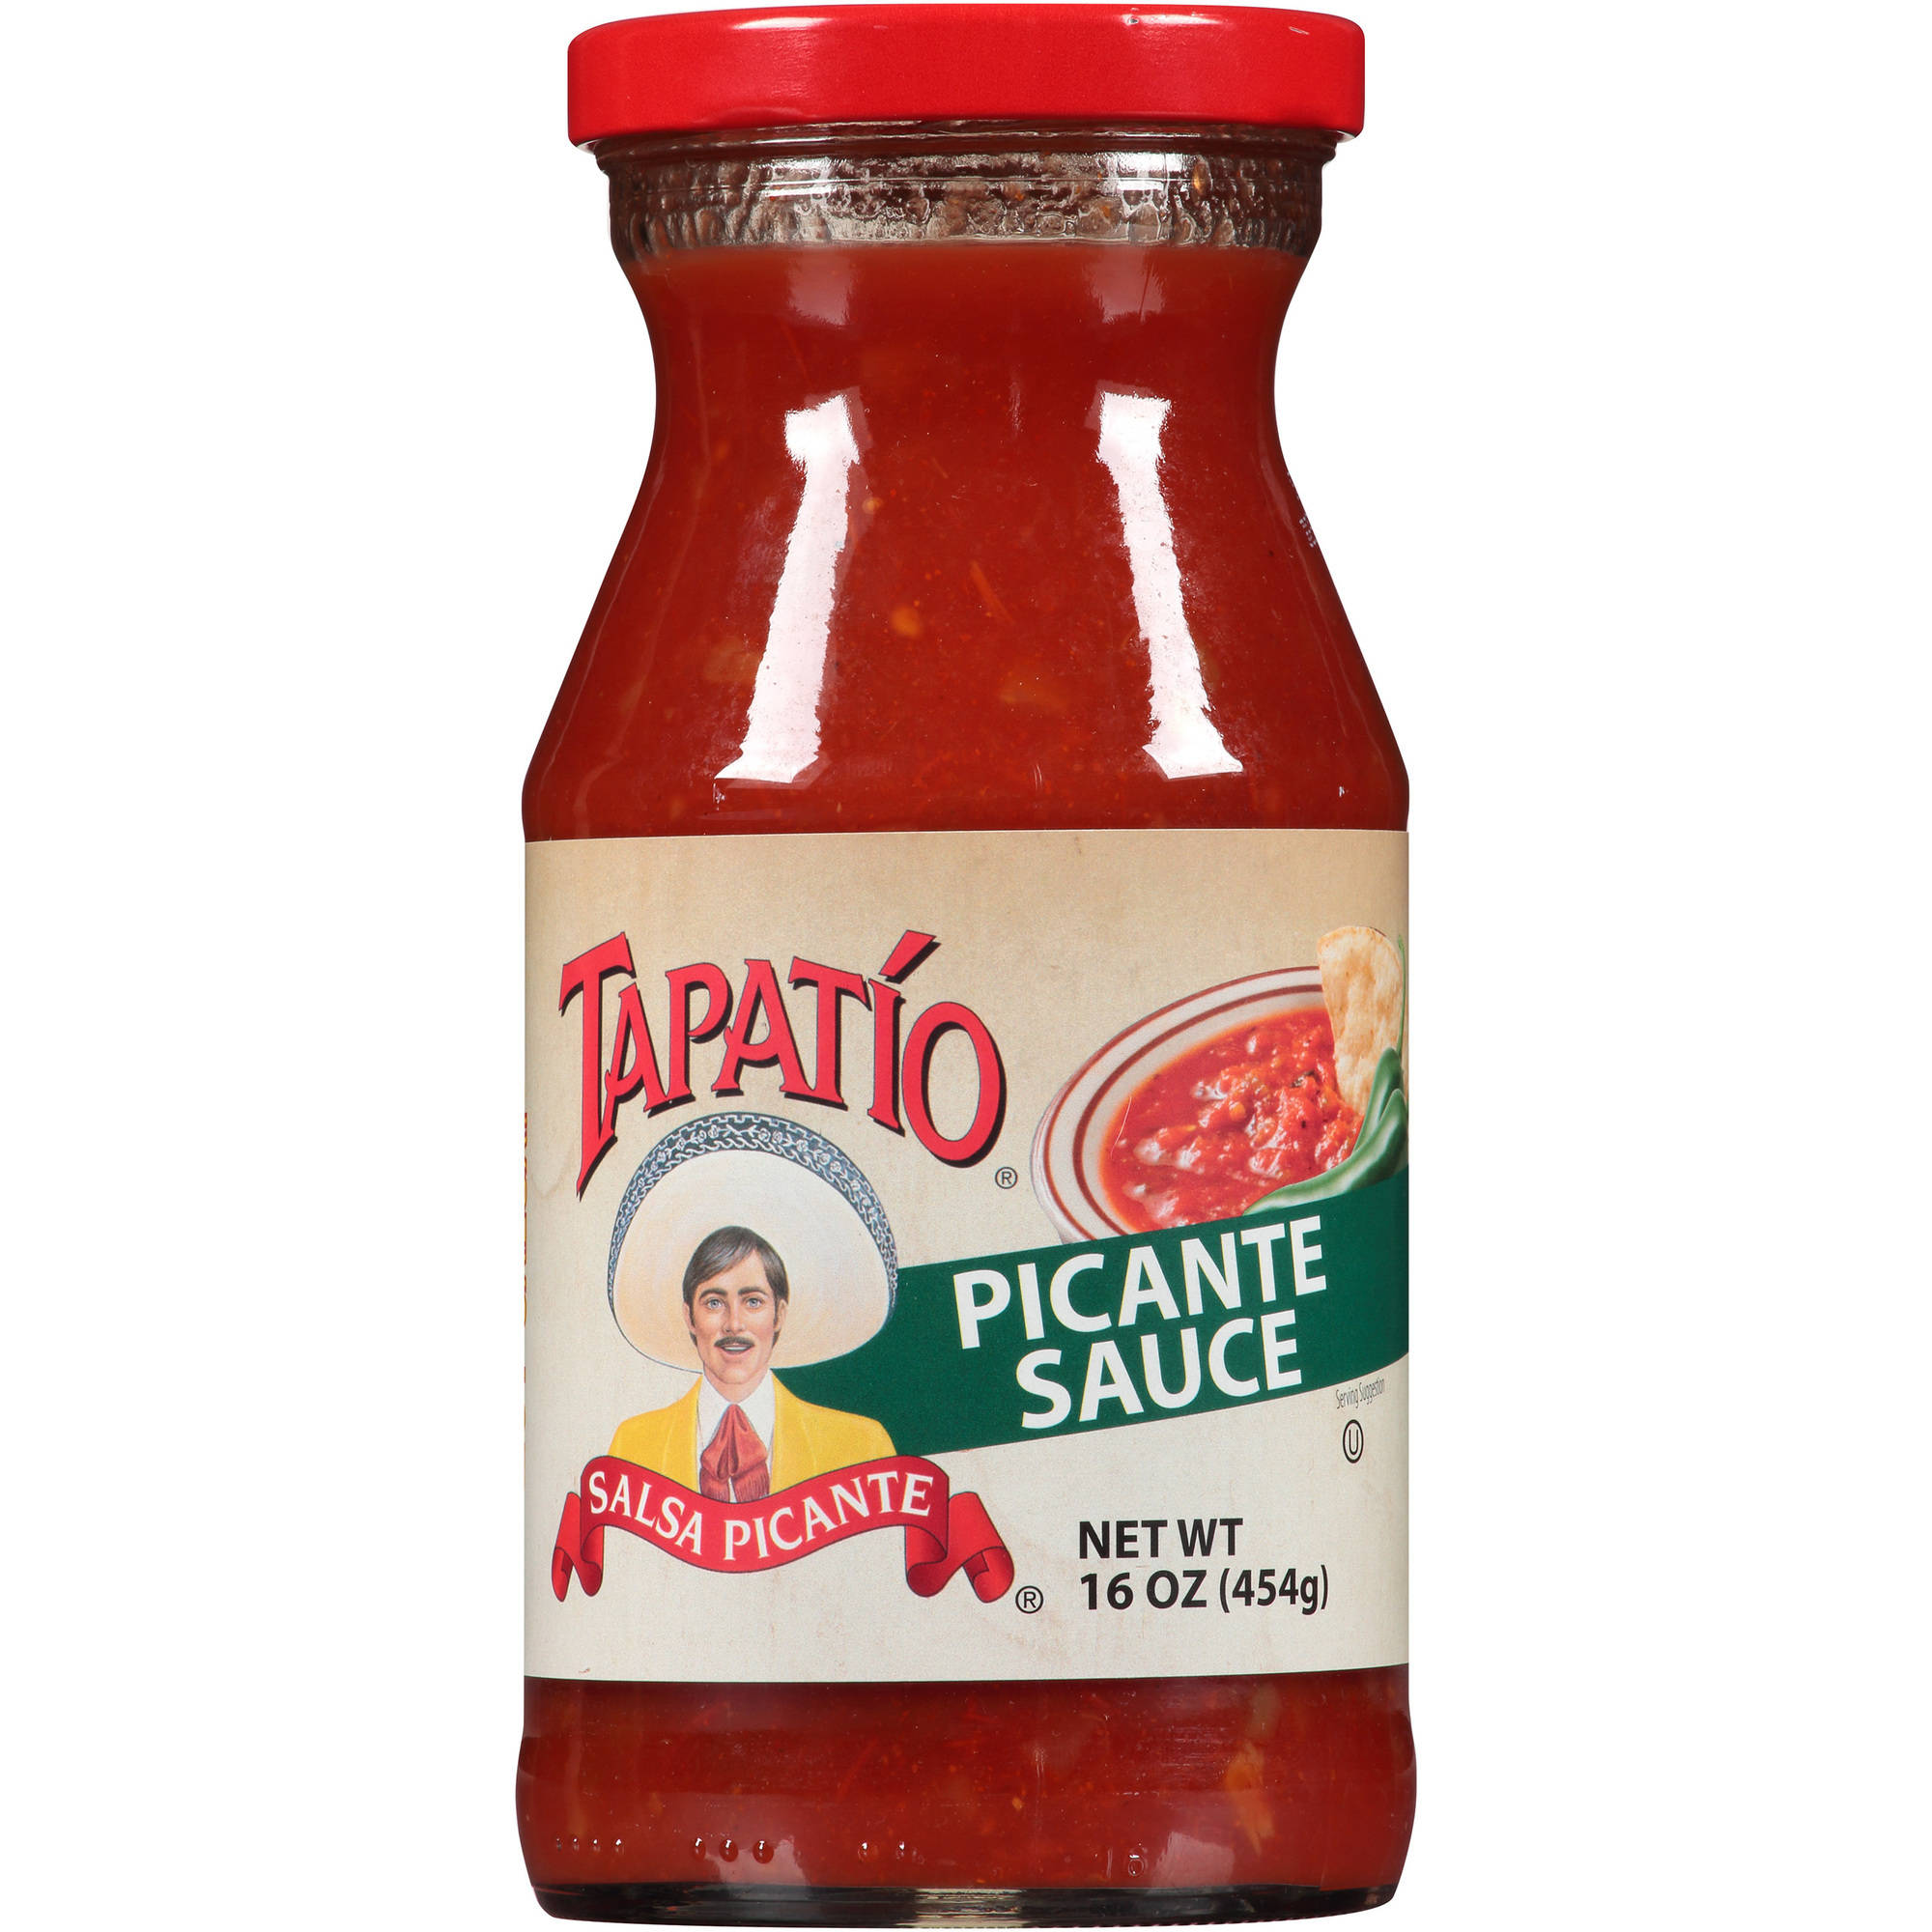 Tapatio Picante Sauce, 16 Oz - Walmart.com - Walmart.com